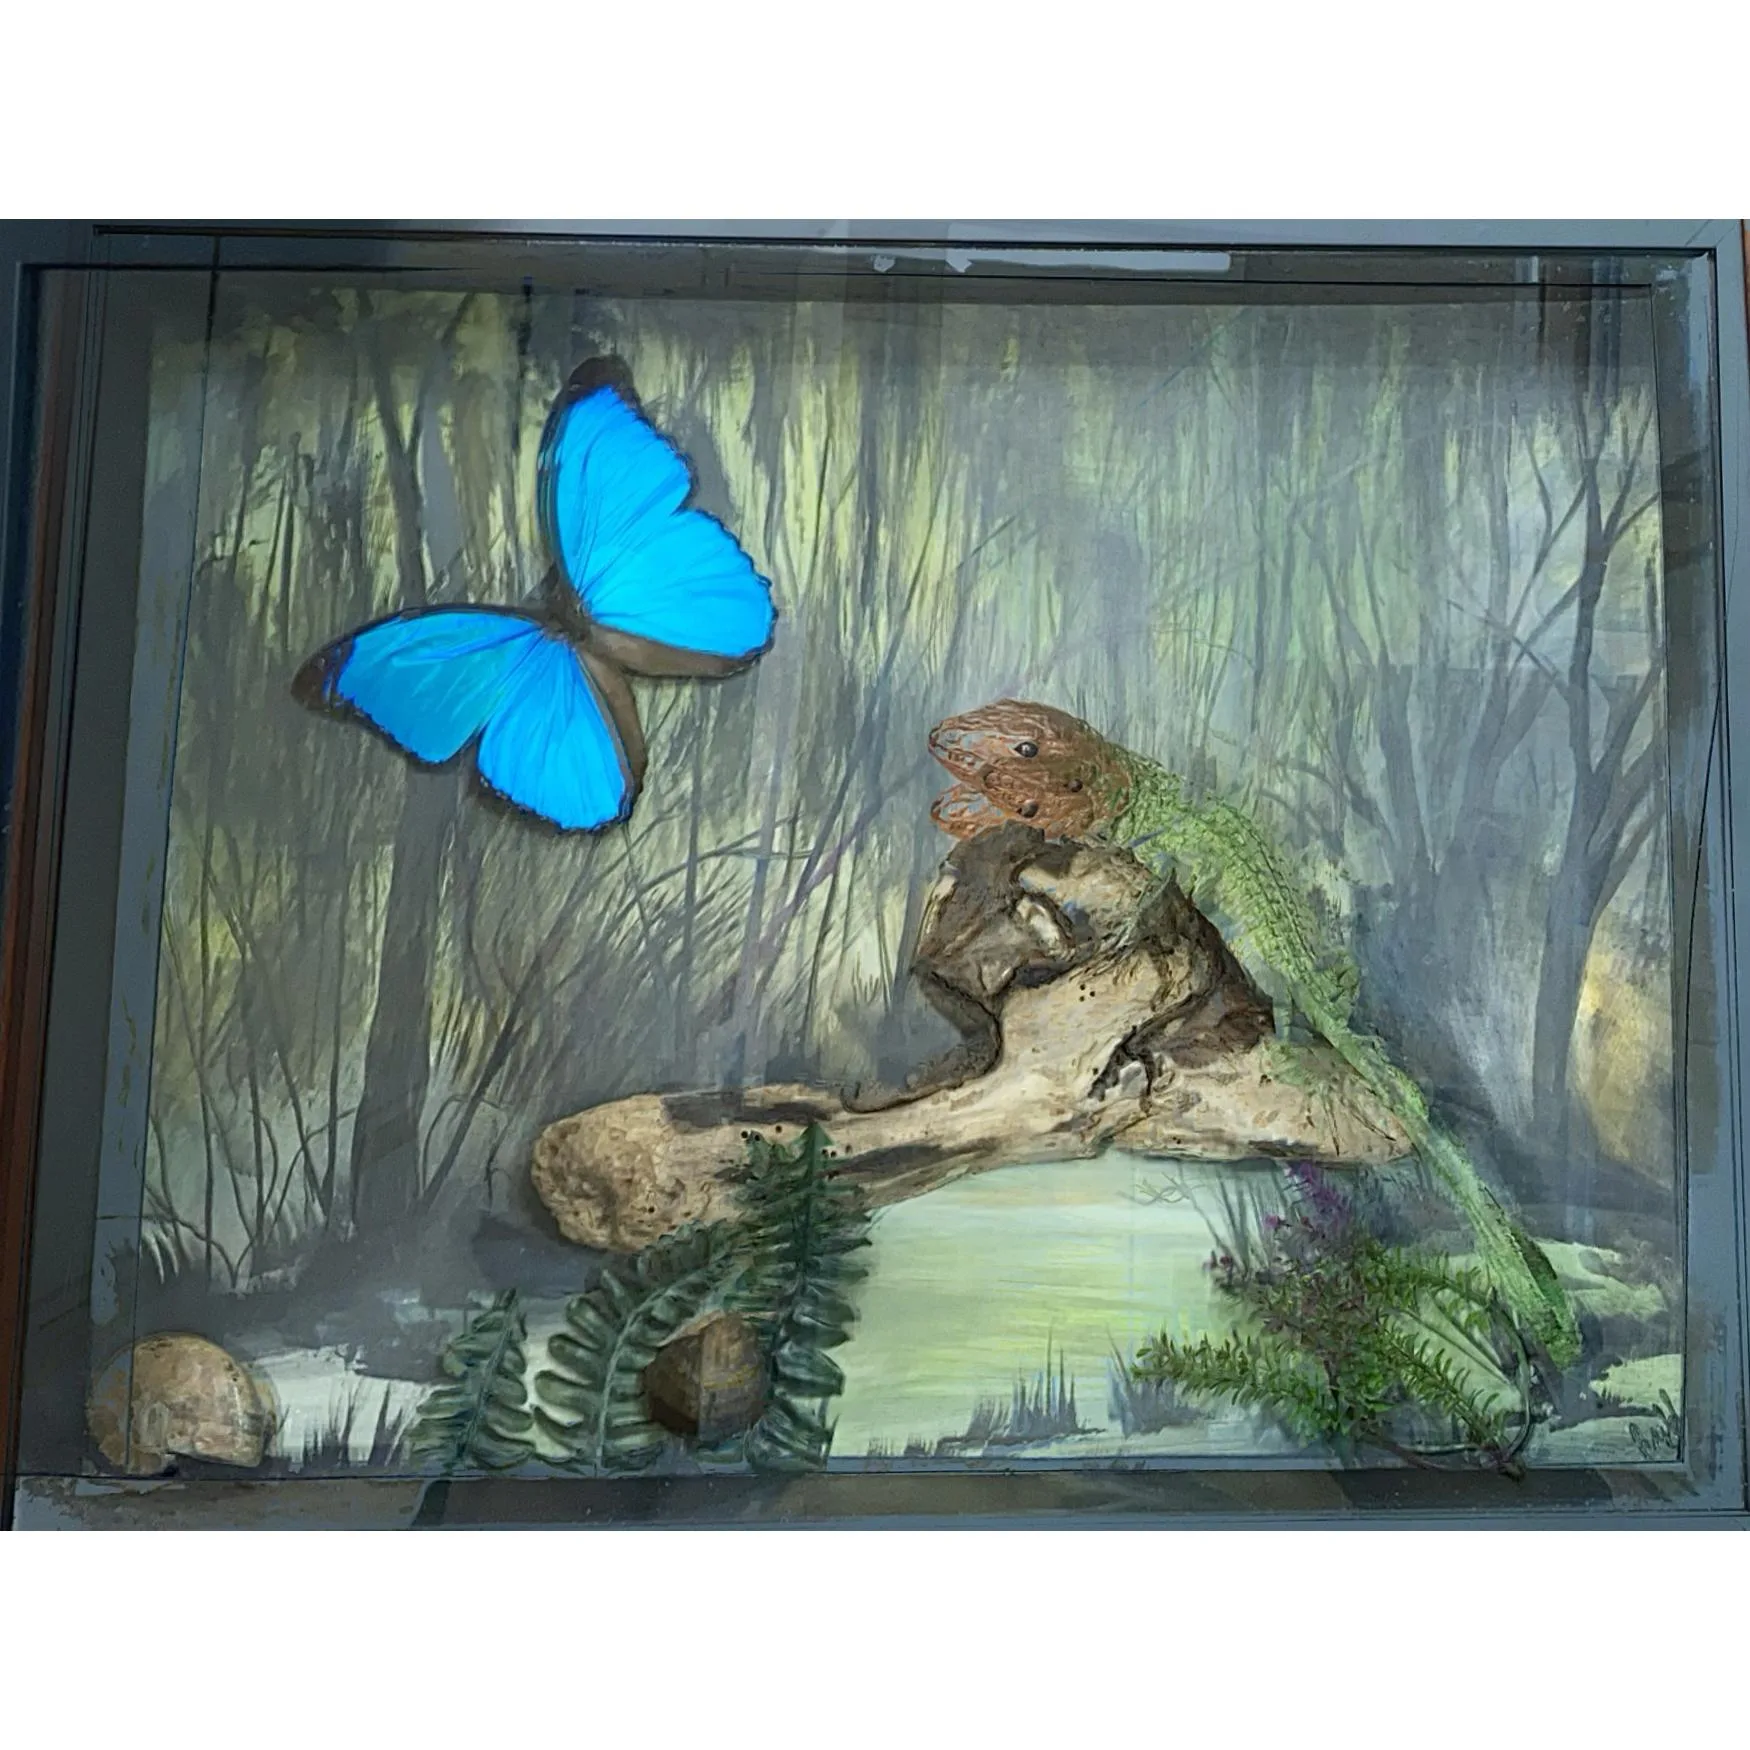 Diorama Framed Art – Caiman Lizard Prehistoric Online